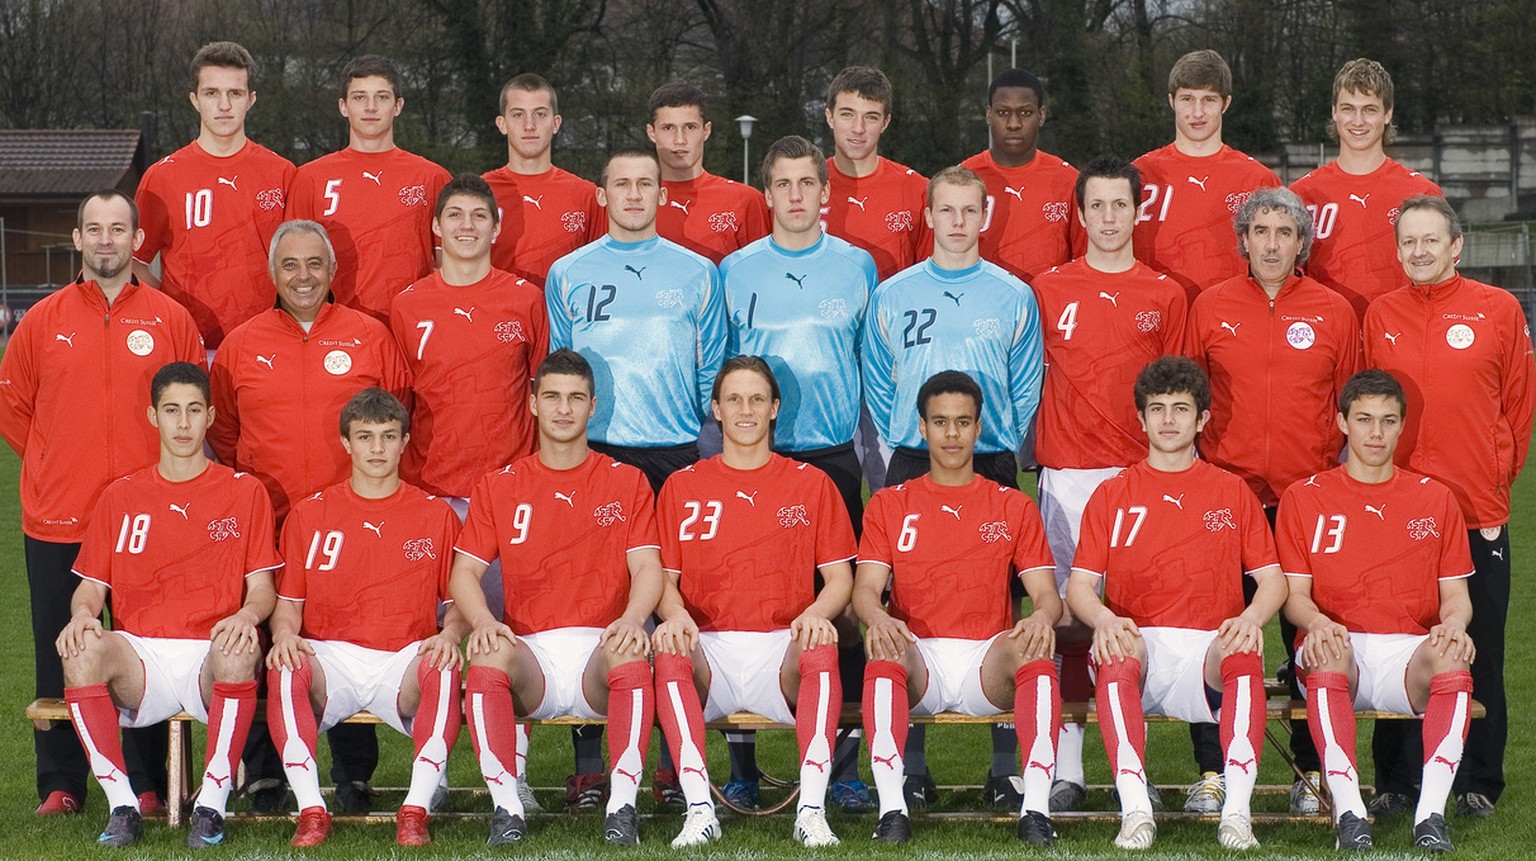 Teambild der U17 Fussball-Nationalmannschaft, aufgenommen am 22. April 2008 im Stade St. Leonard, Freiburg. Vordere Reihe von links: Nassim Ben Khalifa, Xherdan Shaqiri, Dino Rebronja, Michael Lang, S ...